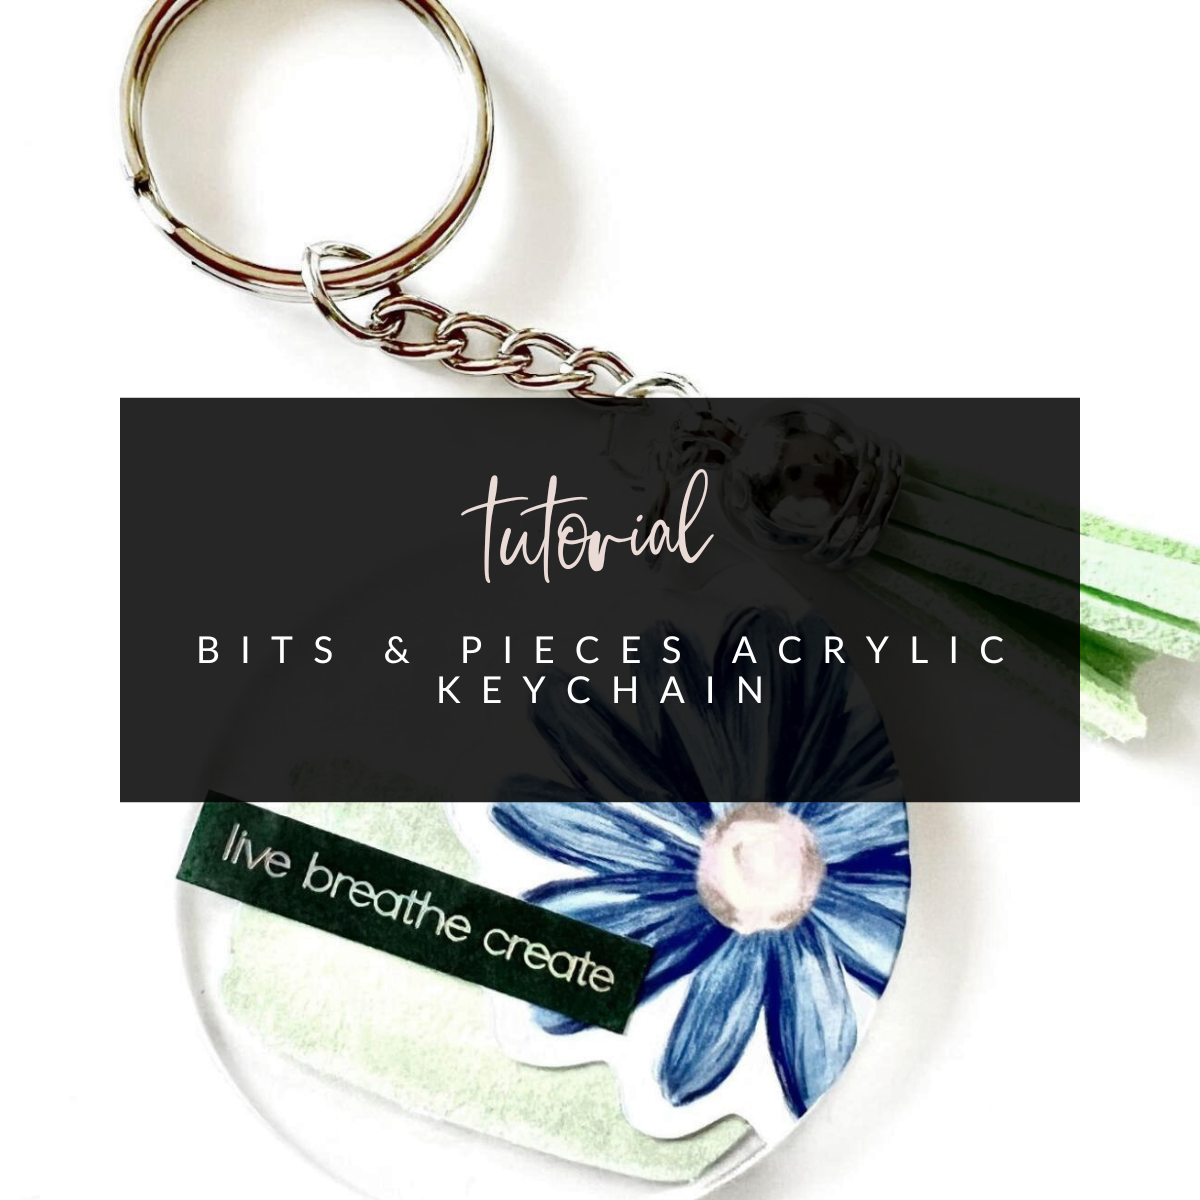 Bits & Pieces Acrylic Keychain